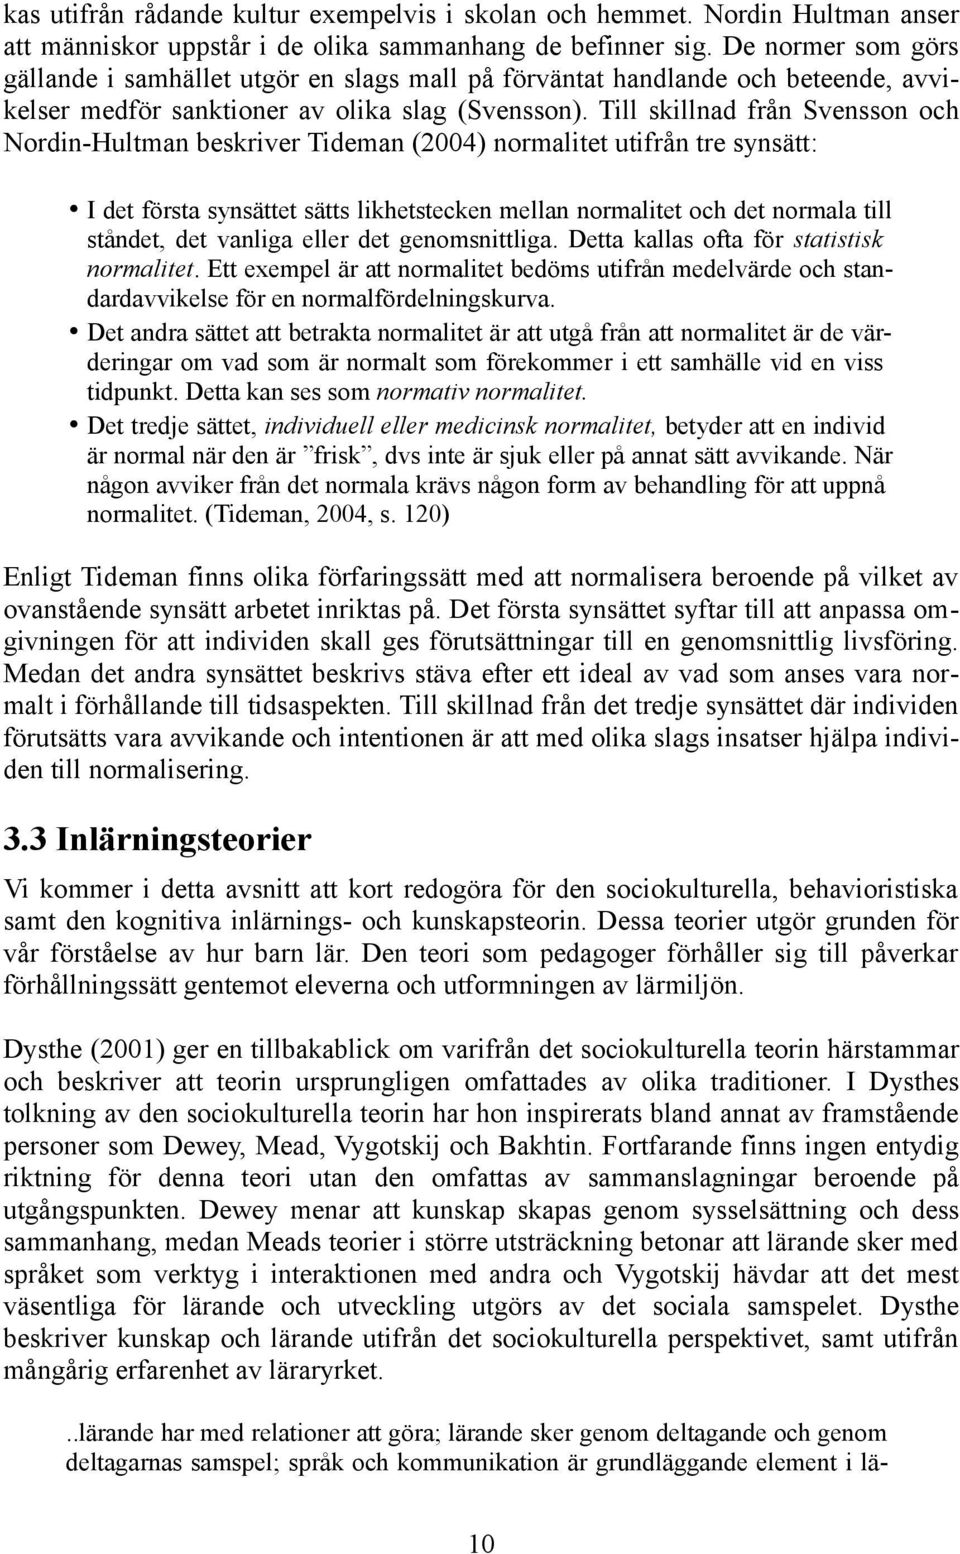 Till skillnad från Svensson och Nordin-Hultman beskriver Tideman (2004) normalitet utifrån tre synsätt: I det första synsättet sätts likhetstecken mellan normalitet och det normala till ståndet, det